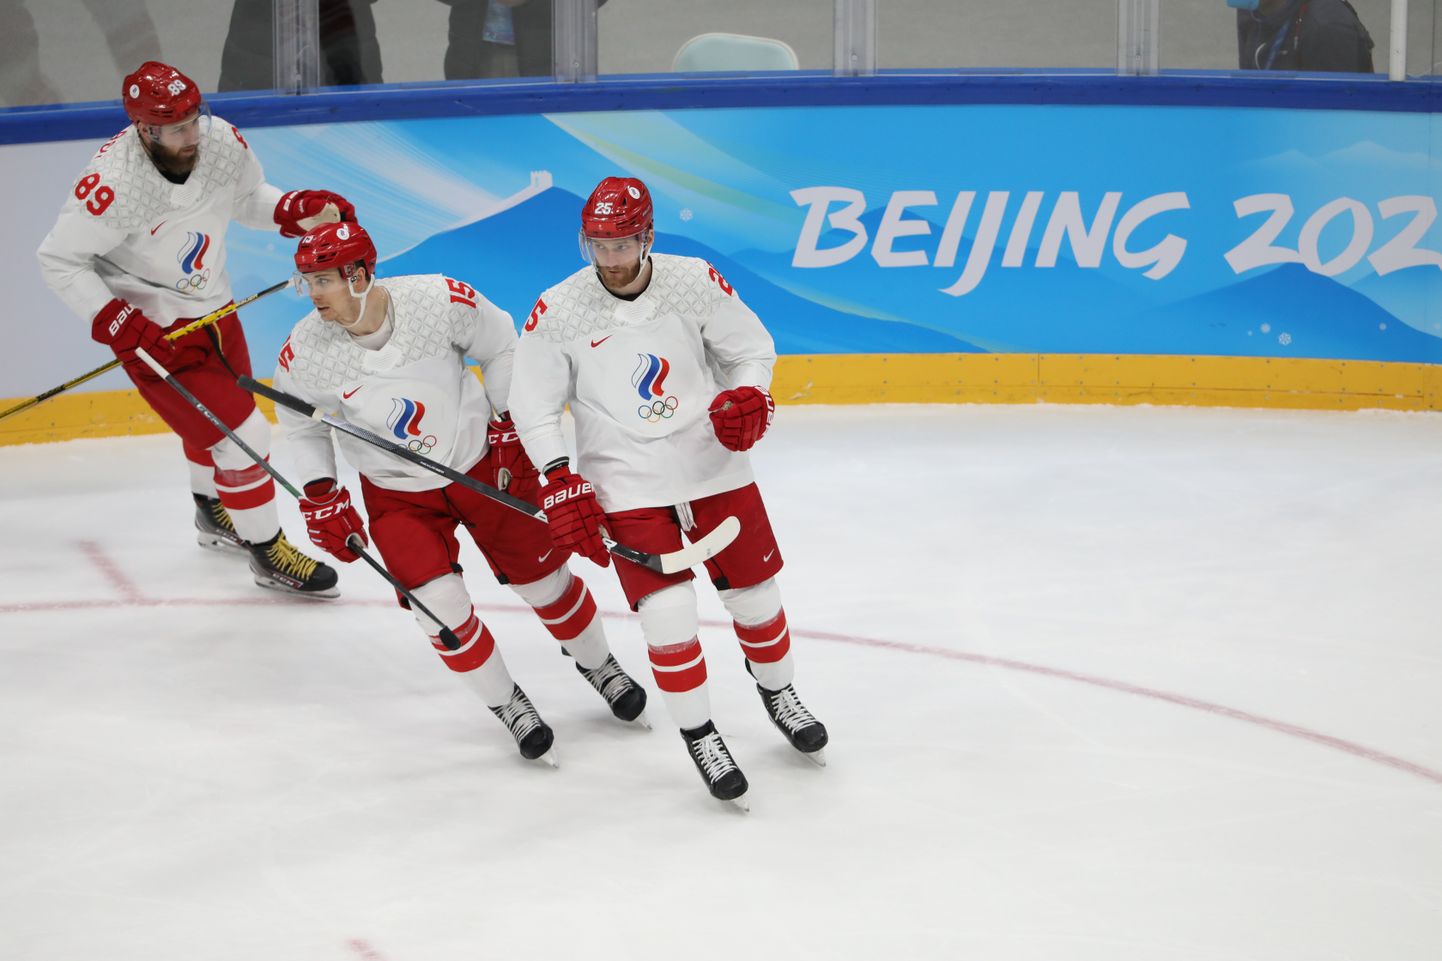 Venemaa jäähokimängijad Pekingi olümpiamängudel.